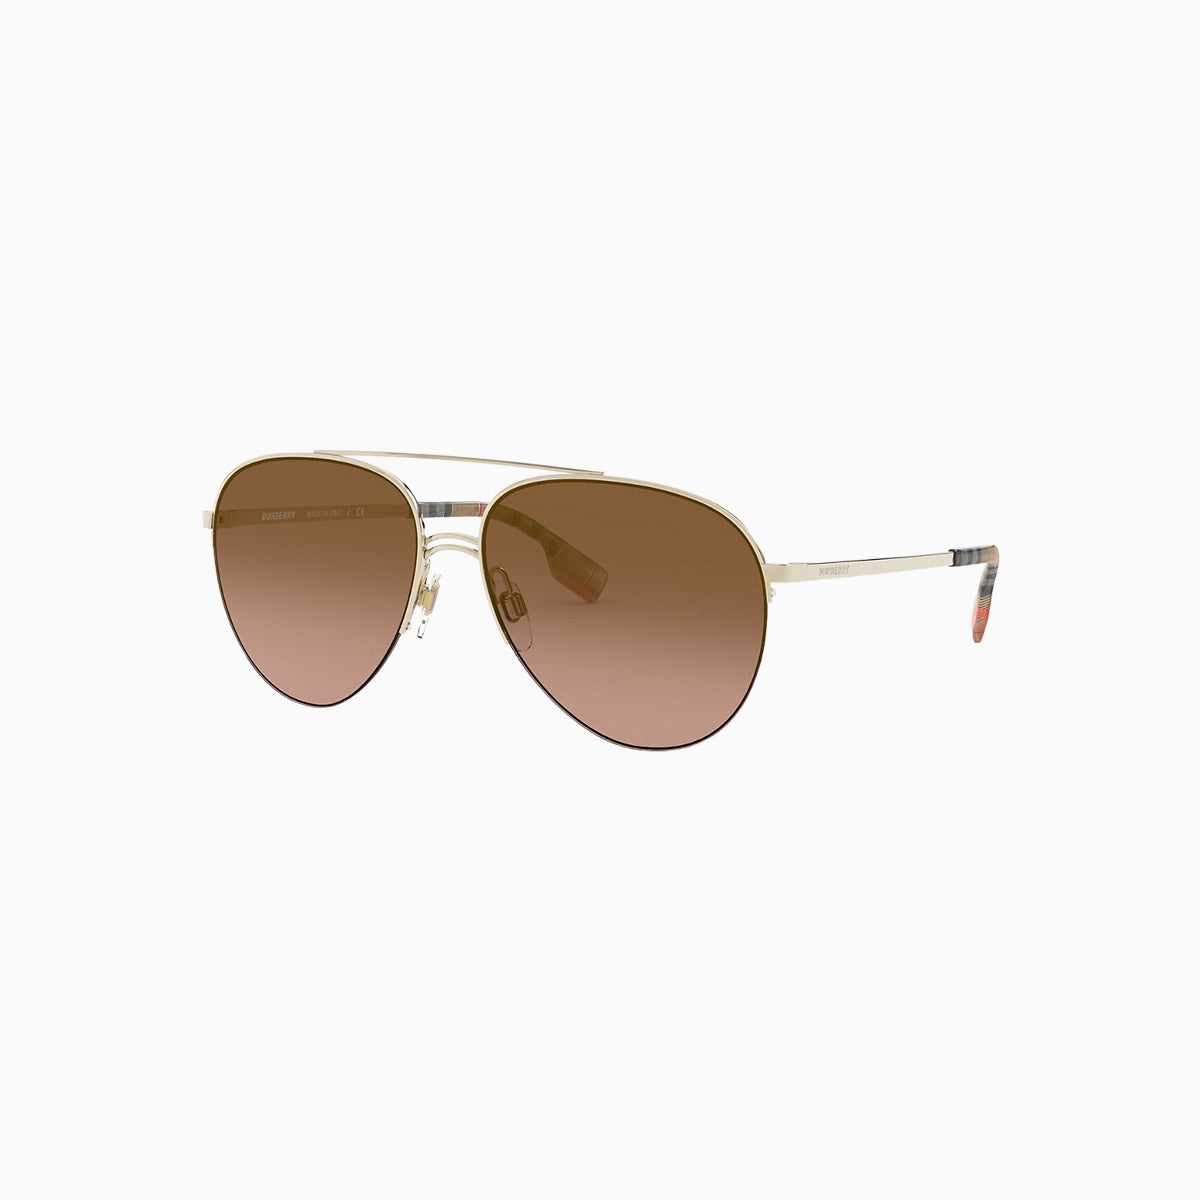 mens-burberry-sunglasses-0be3113-110913